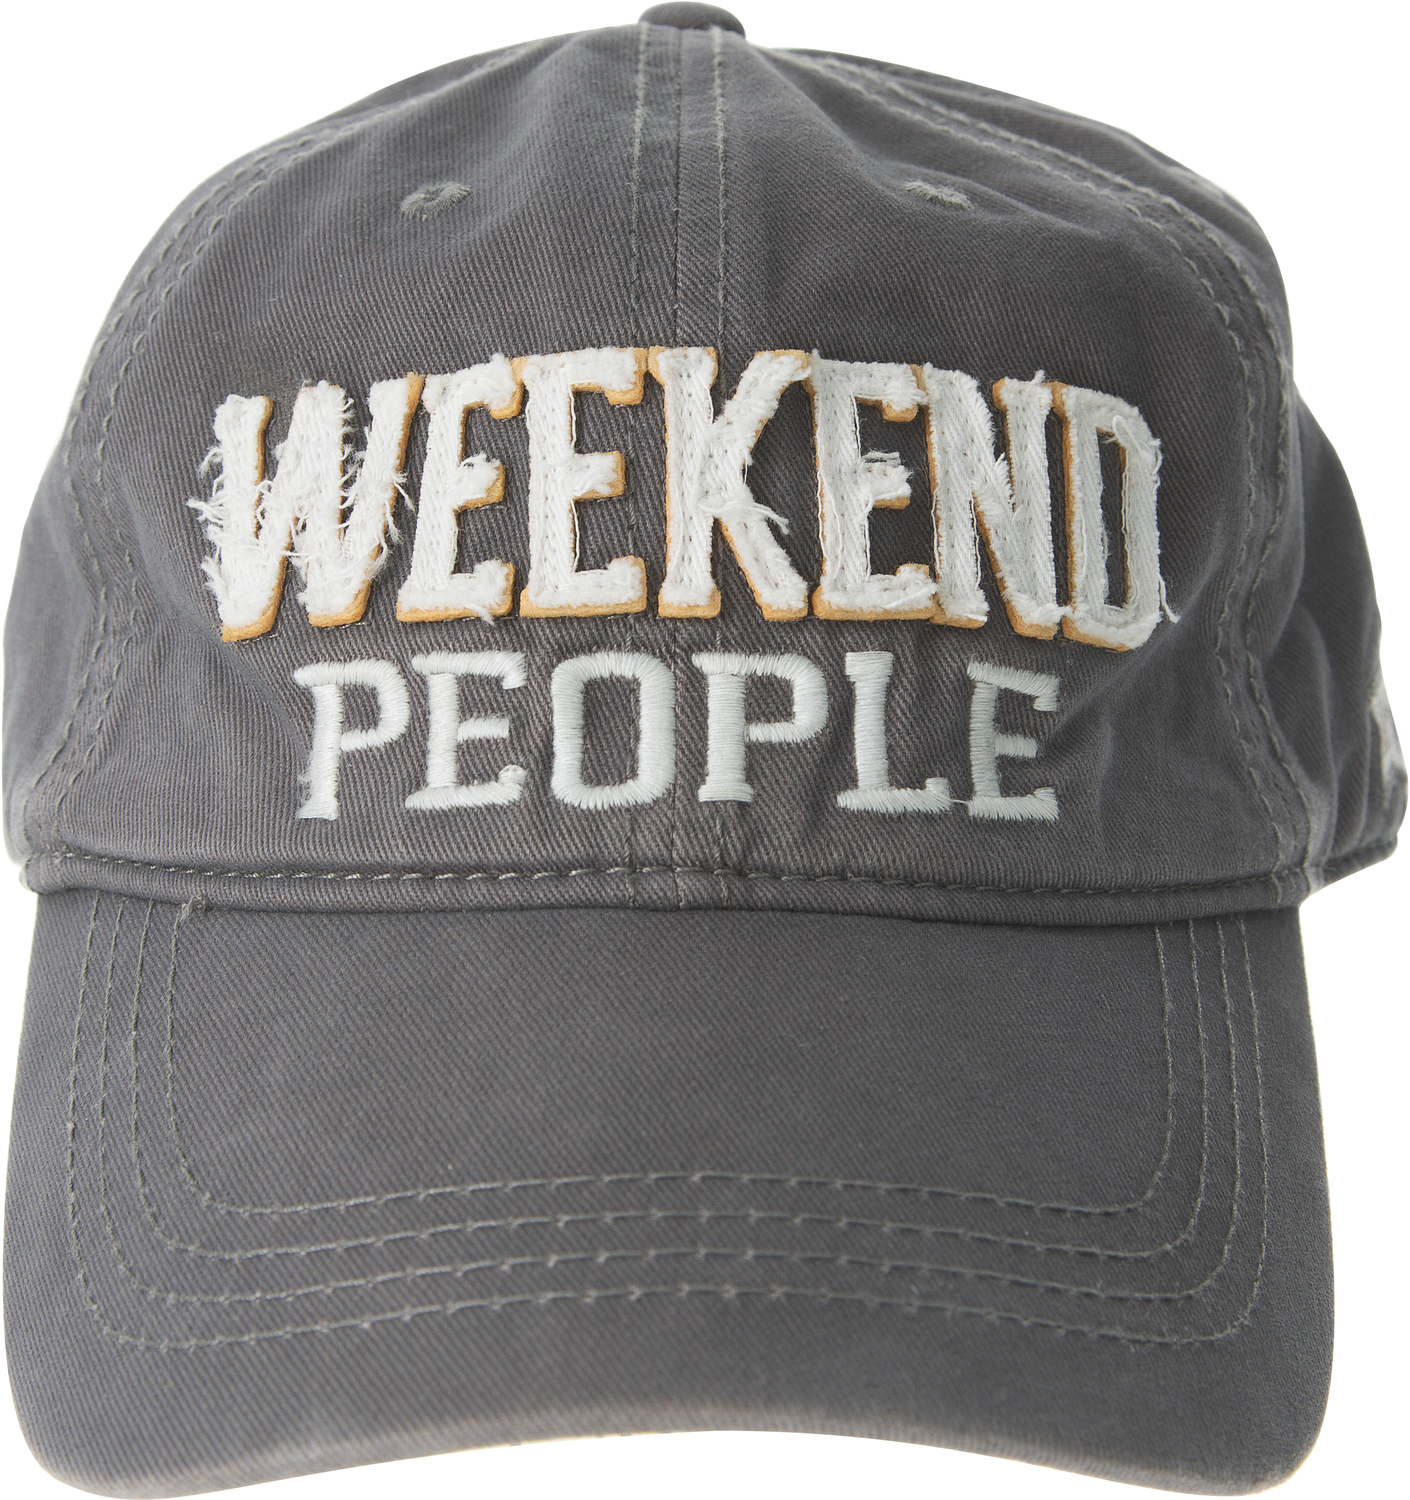 Weekend People by We People - Weekend People - Dark Gray Adjustable Hat